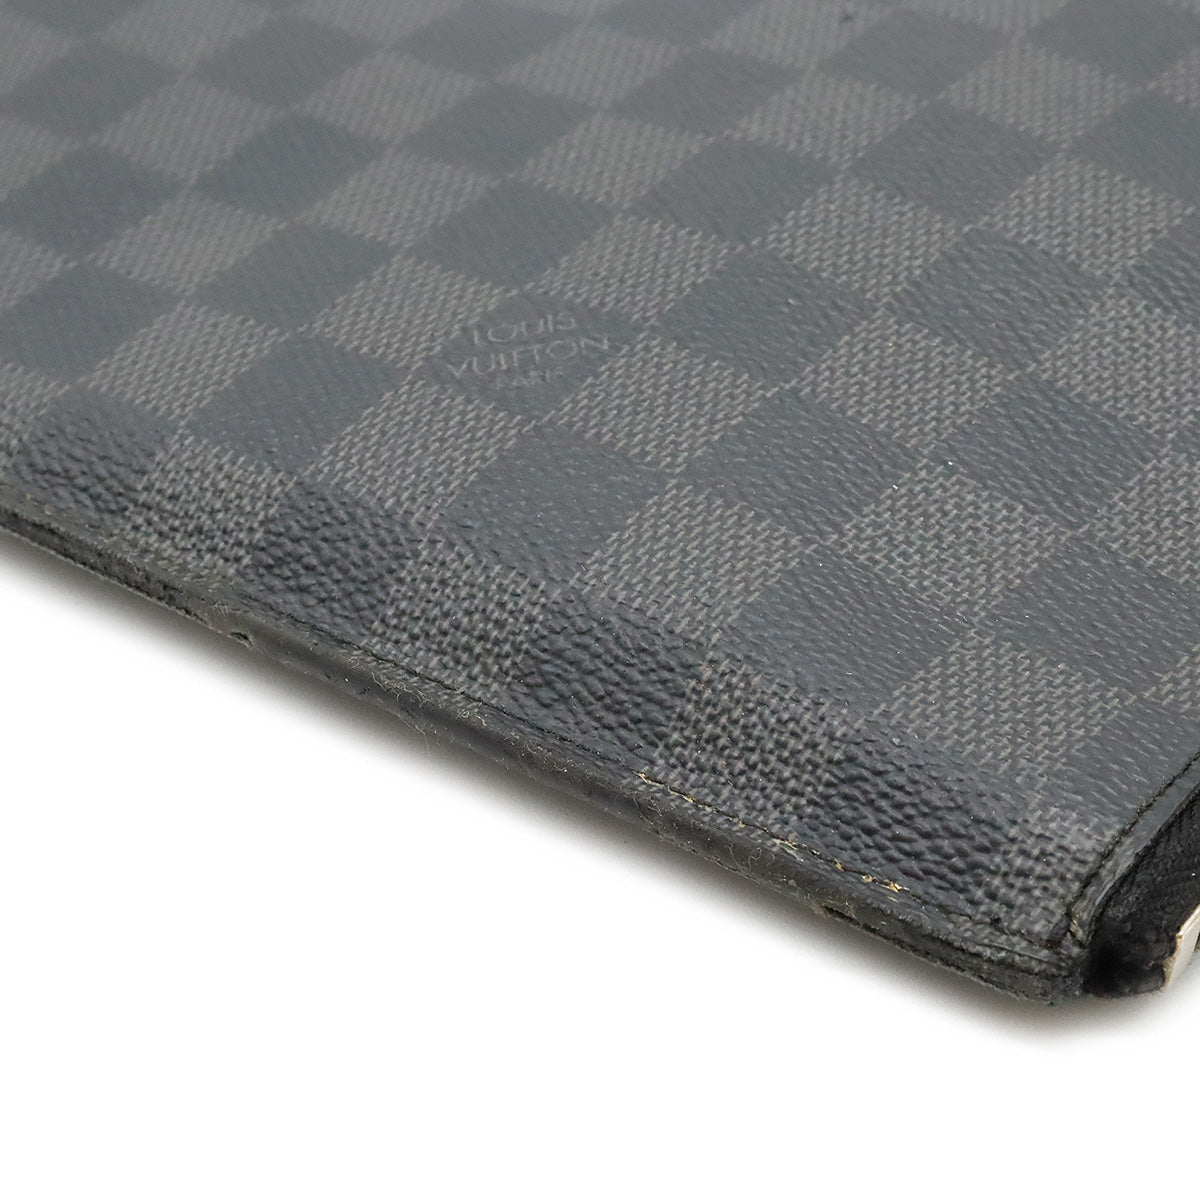 Louis Vuitton Damier Graphite Canvas Tablet Ipad Case Cover